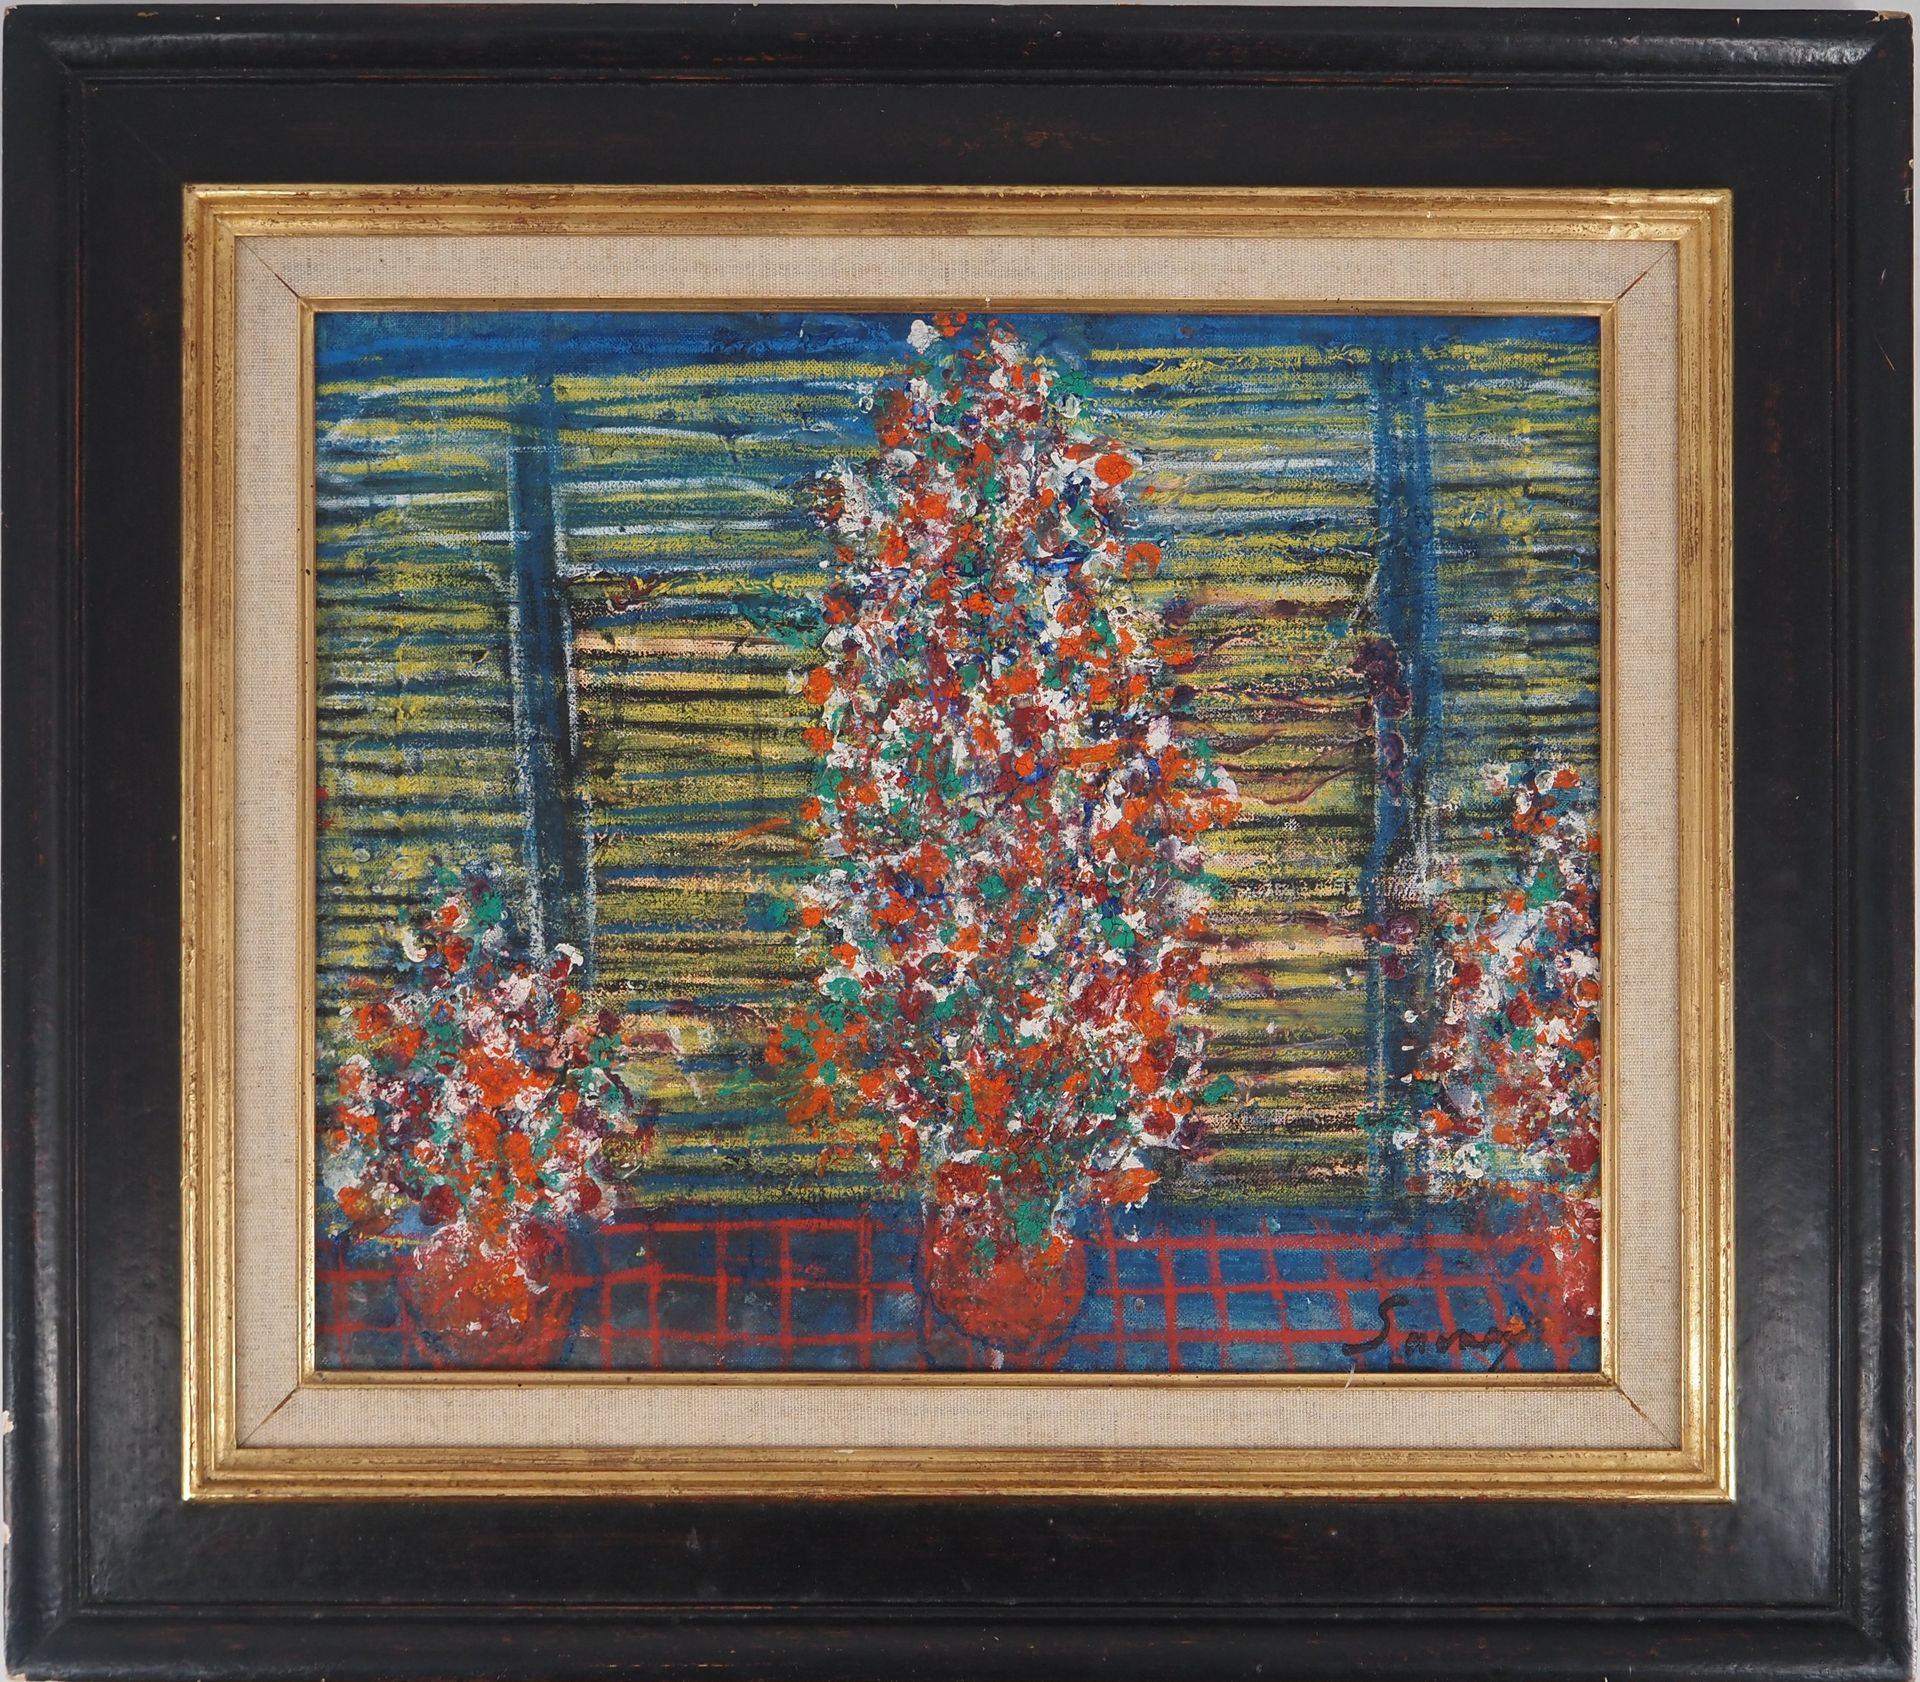 Robert SAVARY 罗伯特-萨瓦里

盛开的树木（内心的生活）

布面油画

右下方有签名

画布上38 x 46厘米

呈现在镀金木框中 57 x 6&hellip;